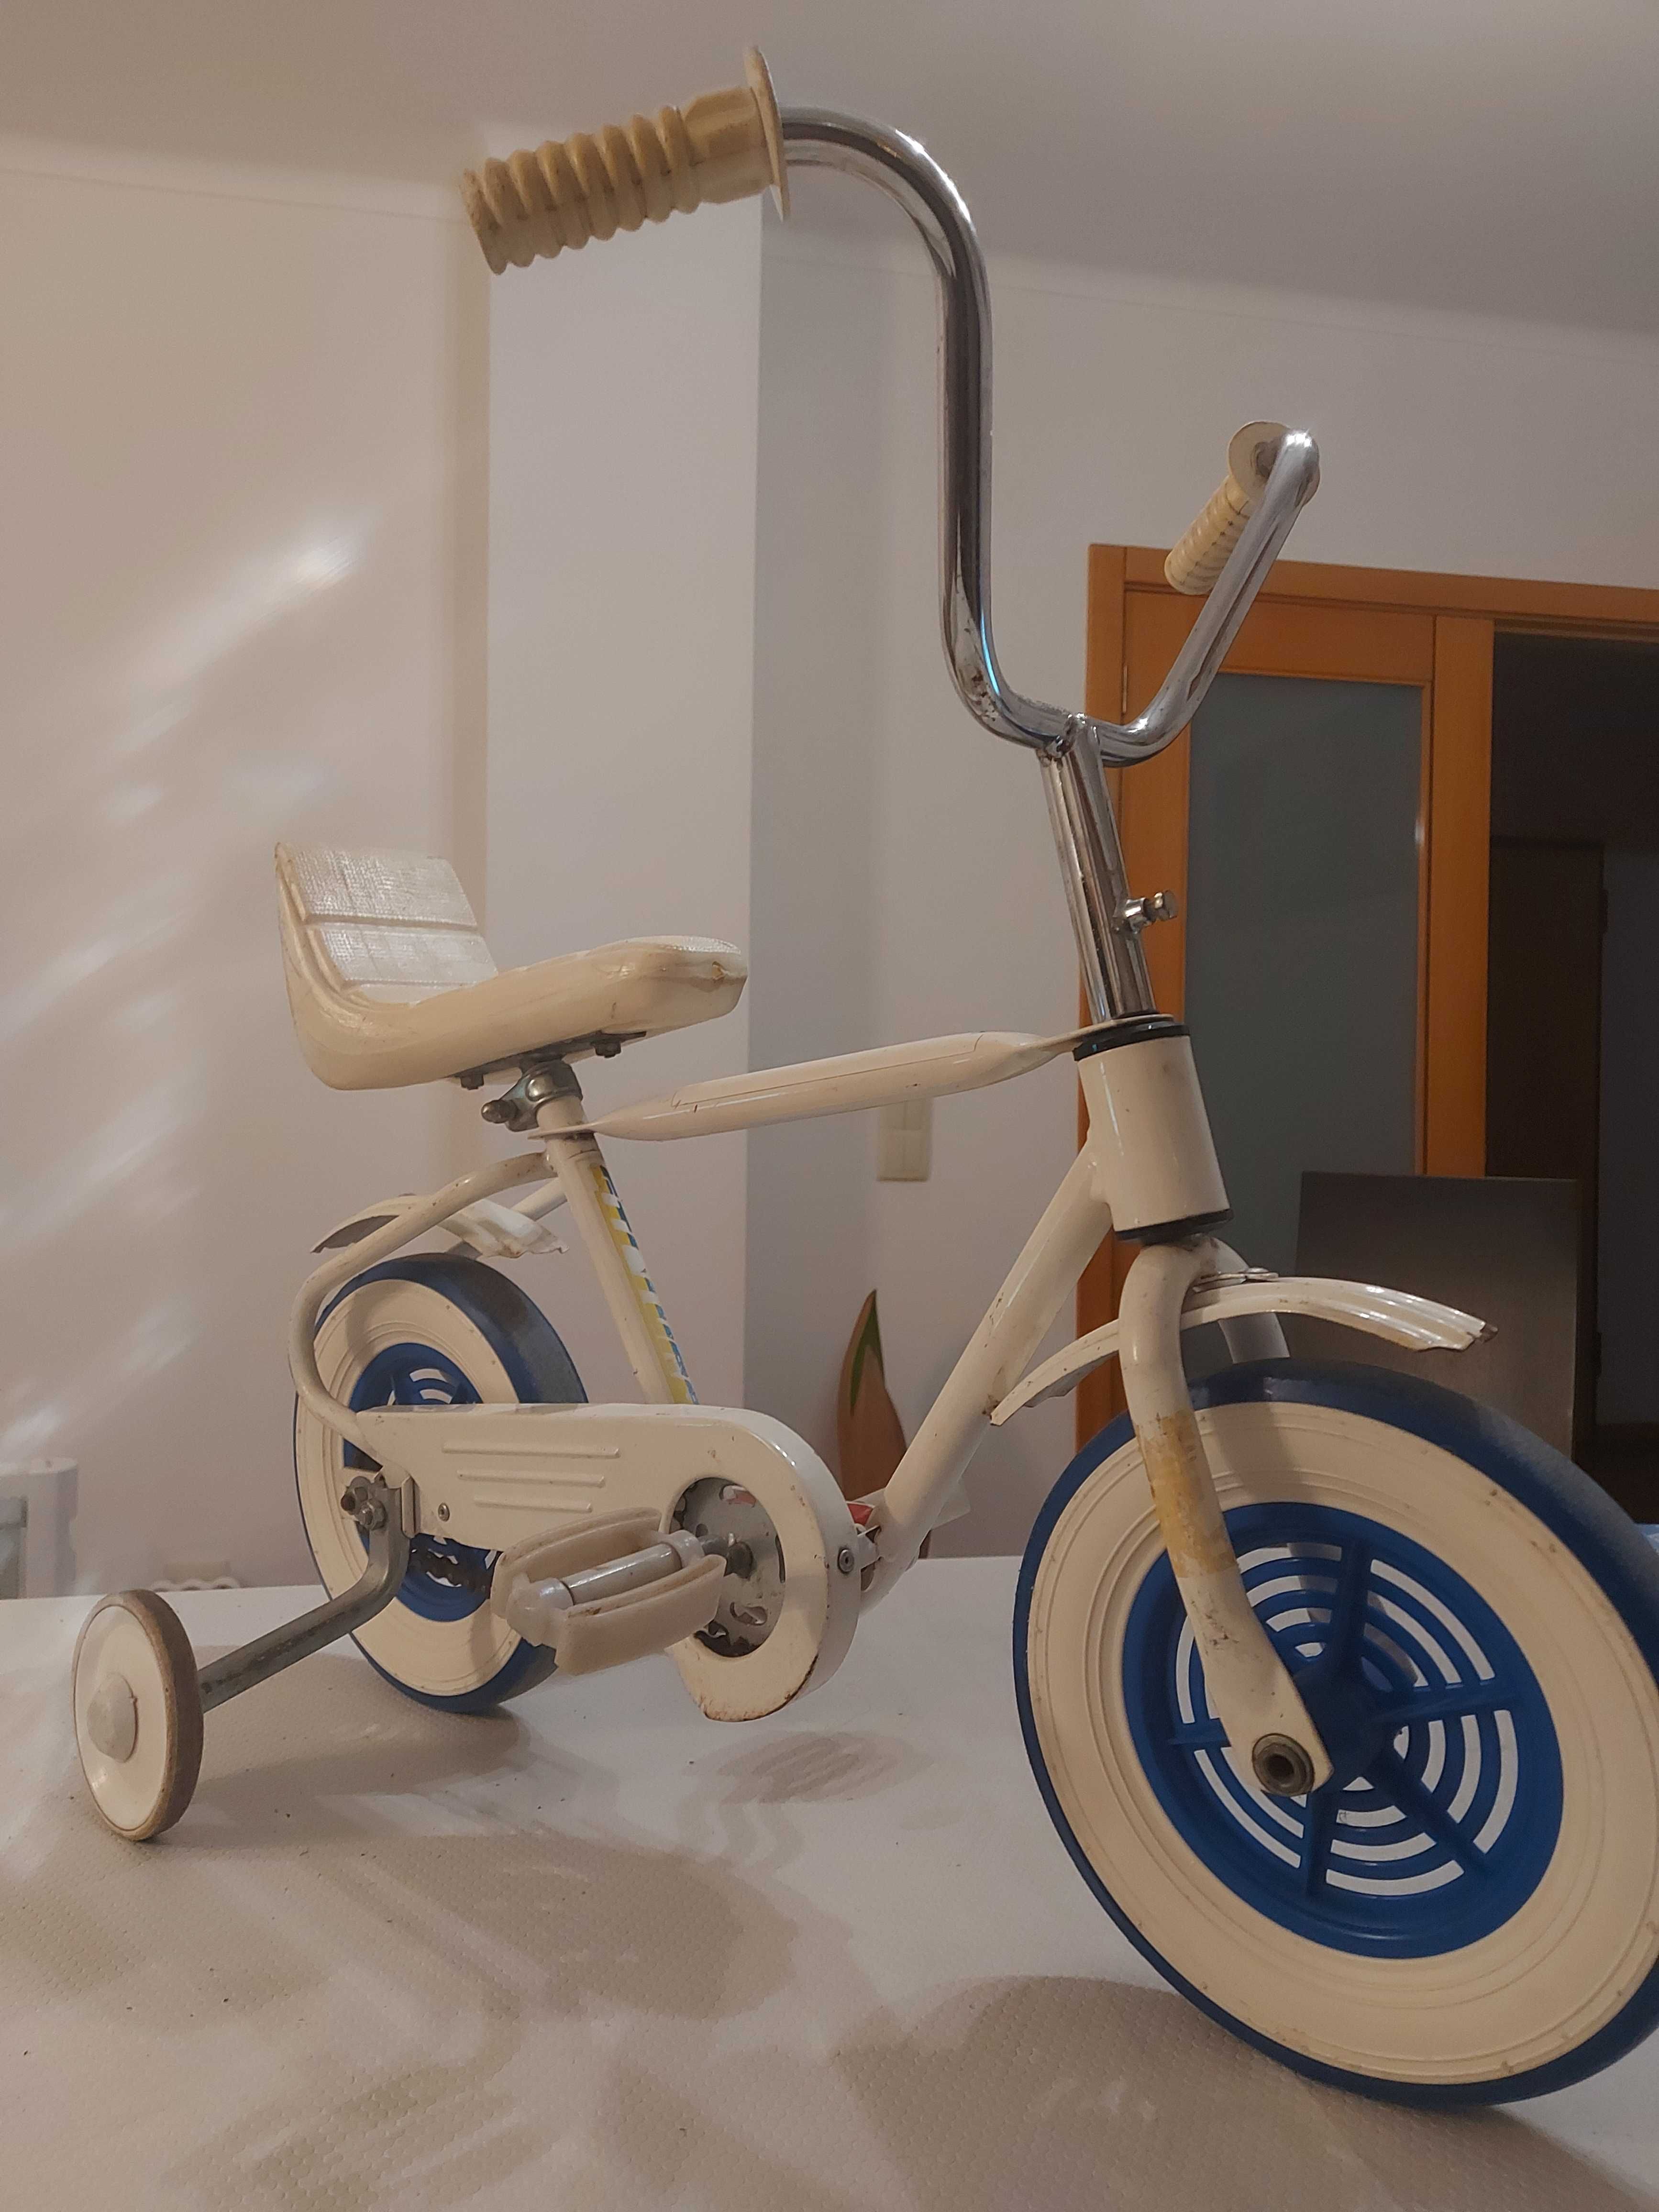 Bicicleta / Triciclo - Até 6 Anos - Design Retro